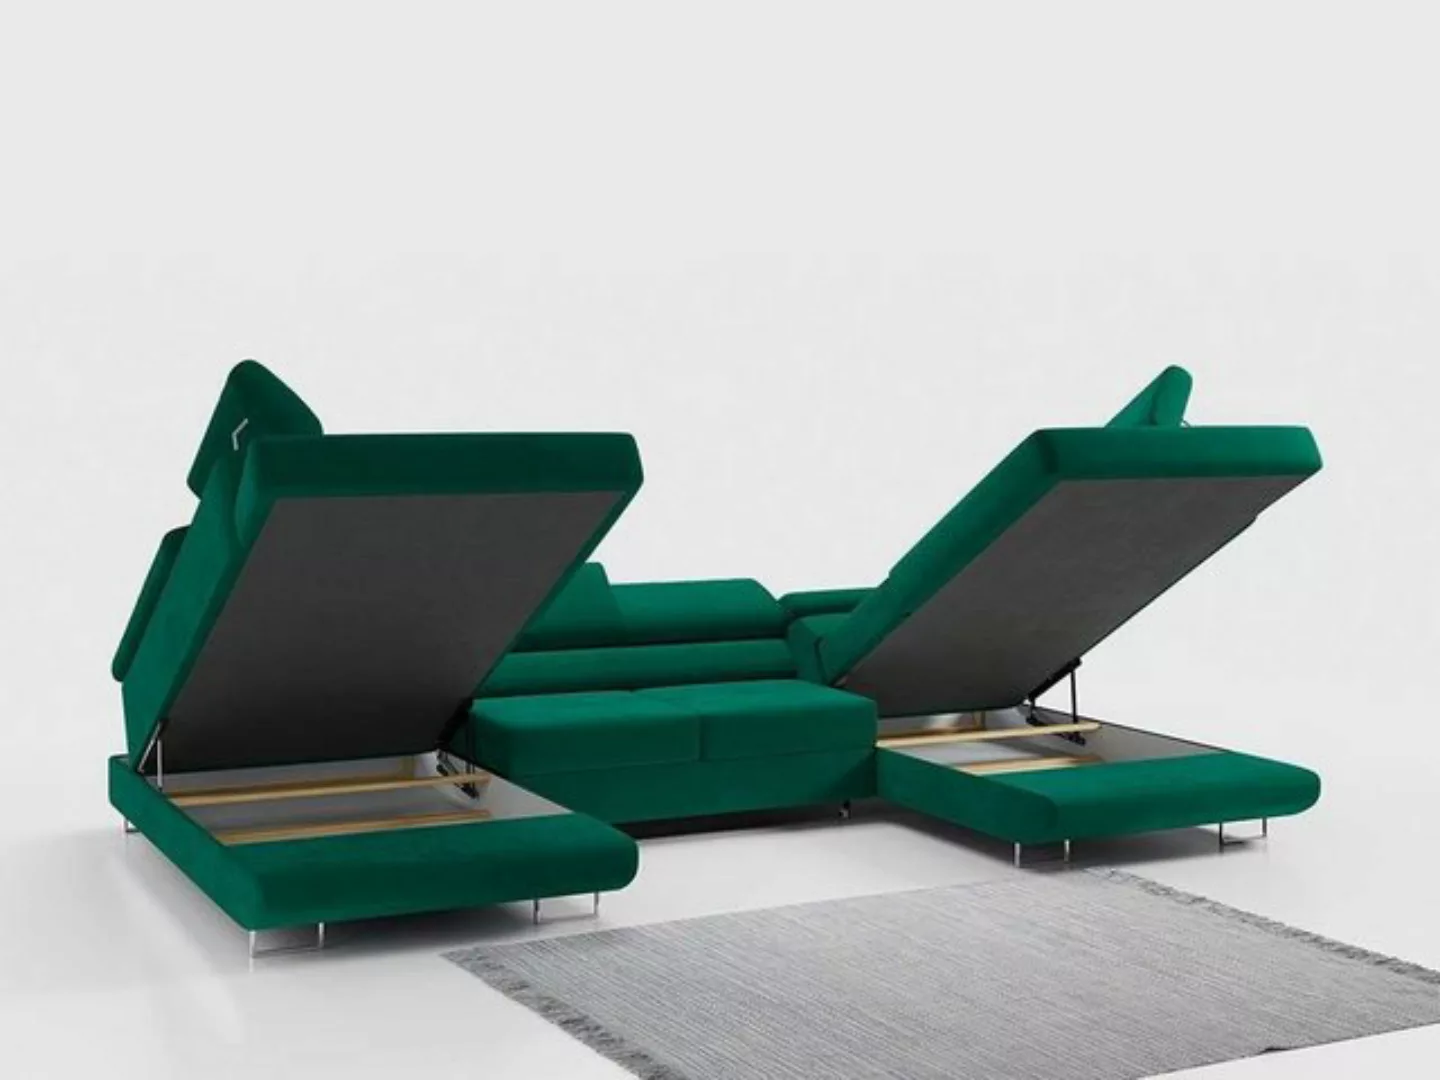 DB-Möbel Ecksofa "Venom" U-Form Couch mit Schlaffunktion, Wohnzimmer. günstig online kaufen